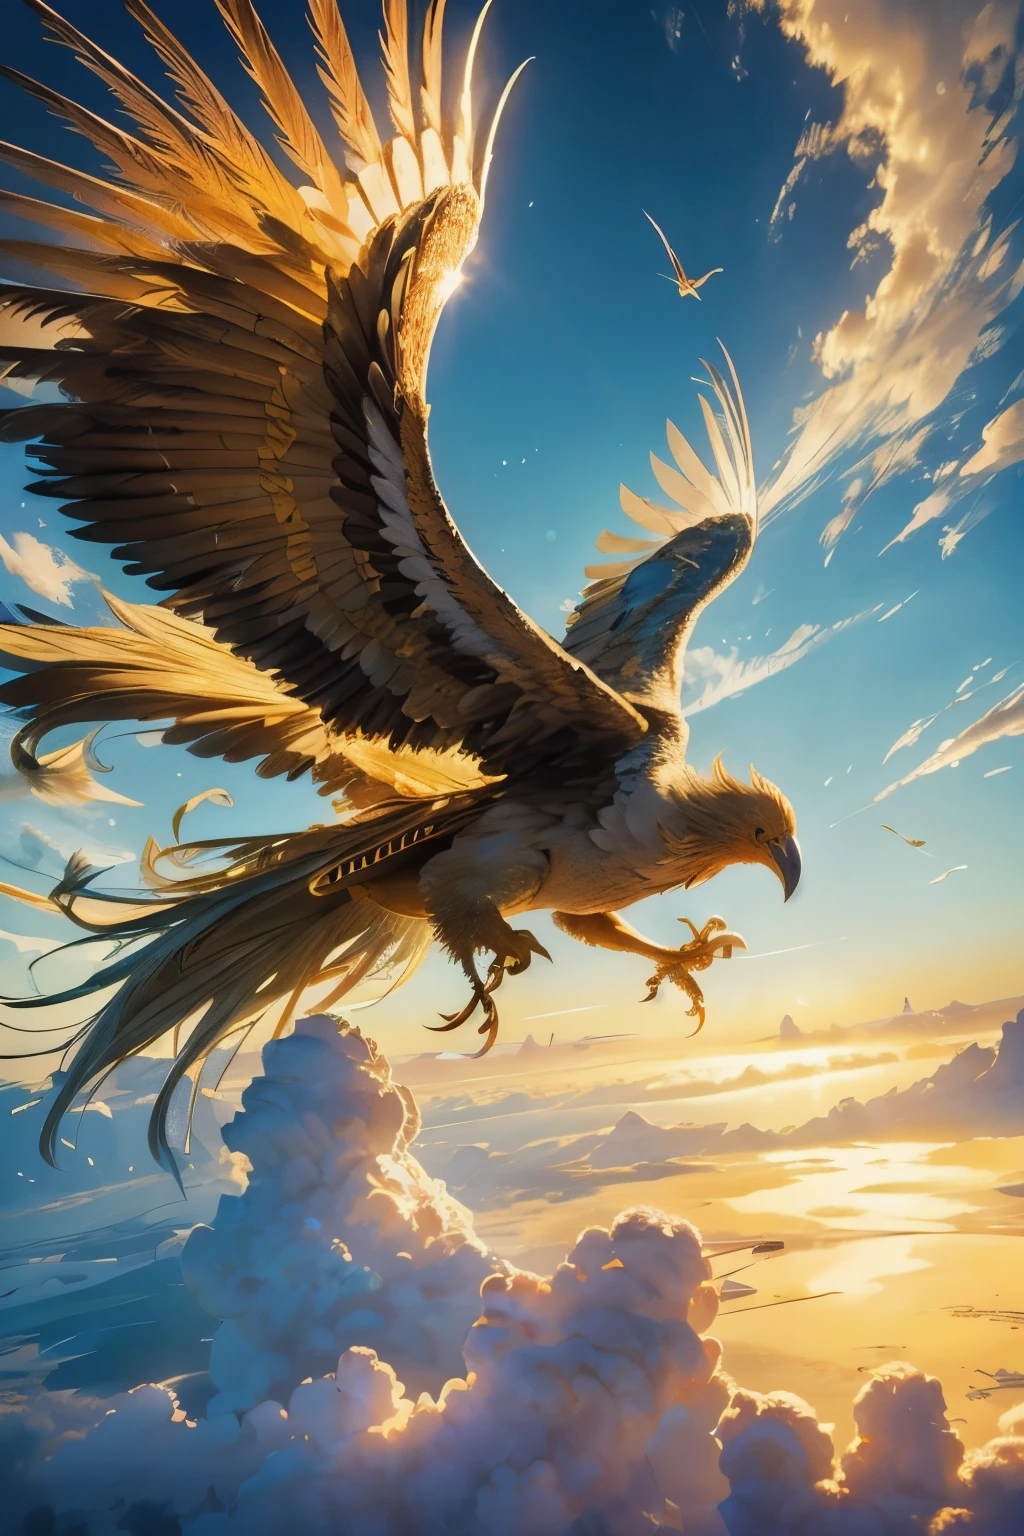 ロック, HD画質の壮大な黄金の鳥, 雄大に空に舞い上がる. その羽, 太陽の輝きできらめく, 光を捉えて眩しいほどに反射する. 鳥の形の複雑な詳細, それぞれの羽の端が定義される, 息を呑むような視覚体験を創造する. ロックの金色の体は太陽の光に輝く, それに空気を与える, まるで神話のような外観. その翼, 飛行中に広く広がる, 澄み切った青空に美しさと力強さの光景を作り出す. 高解像度の画像は、あらゆる細部を驚くほど鮮明に映し出します。, 見る者にその壮大な生き物への畏敬の念を抱かせる.